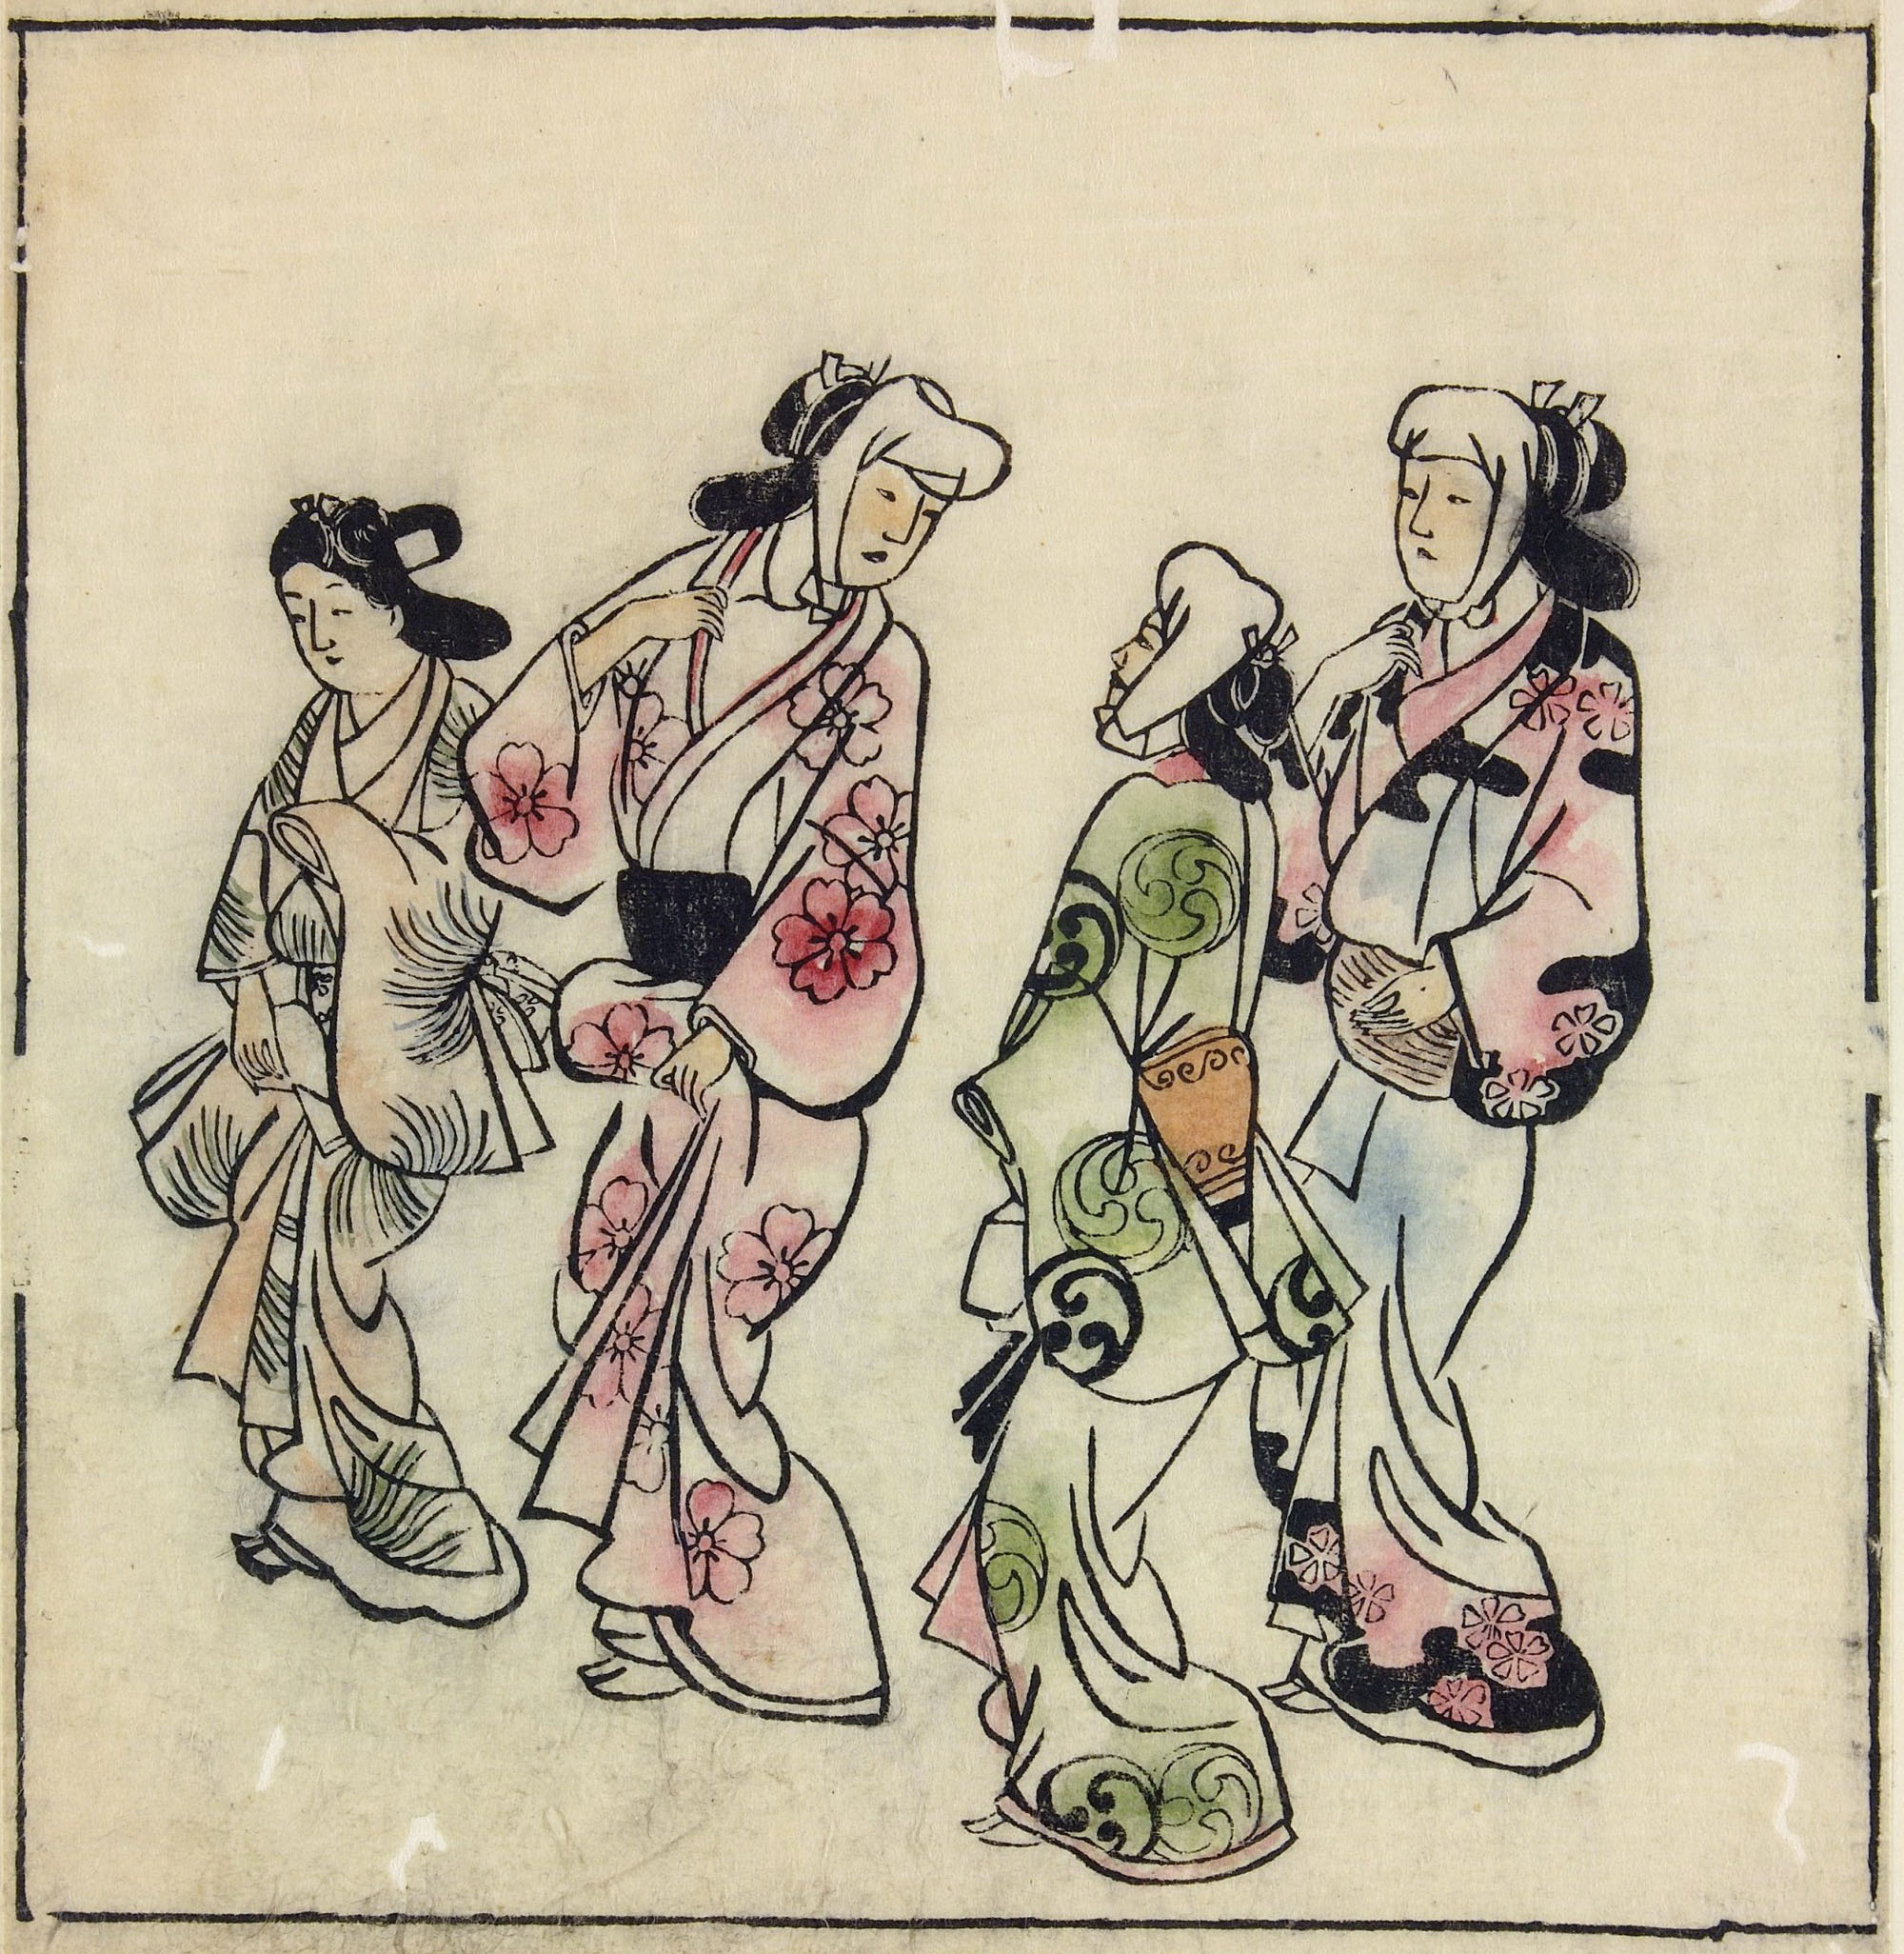 Моронобу Хисикава. "Встреча между двумя парами гуляющих женщин". 1683.